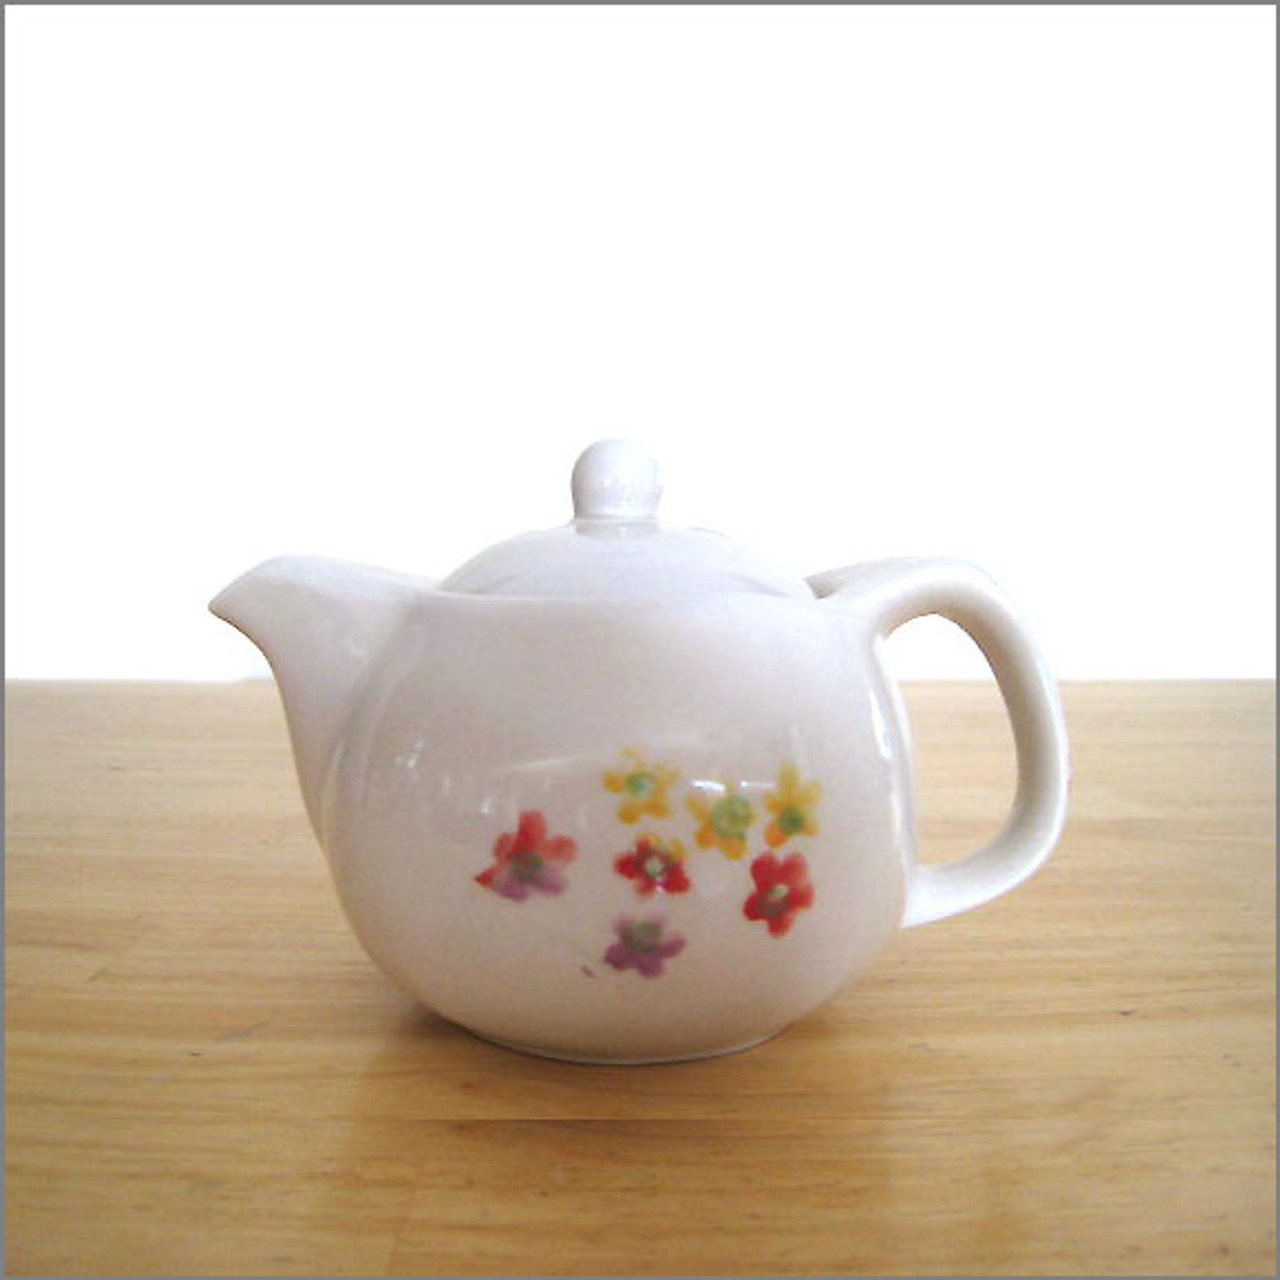 Mini Teapot